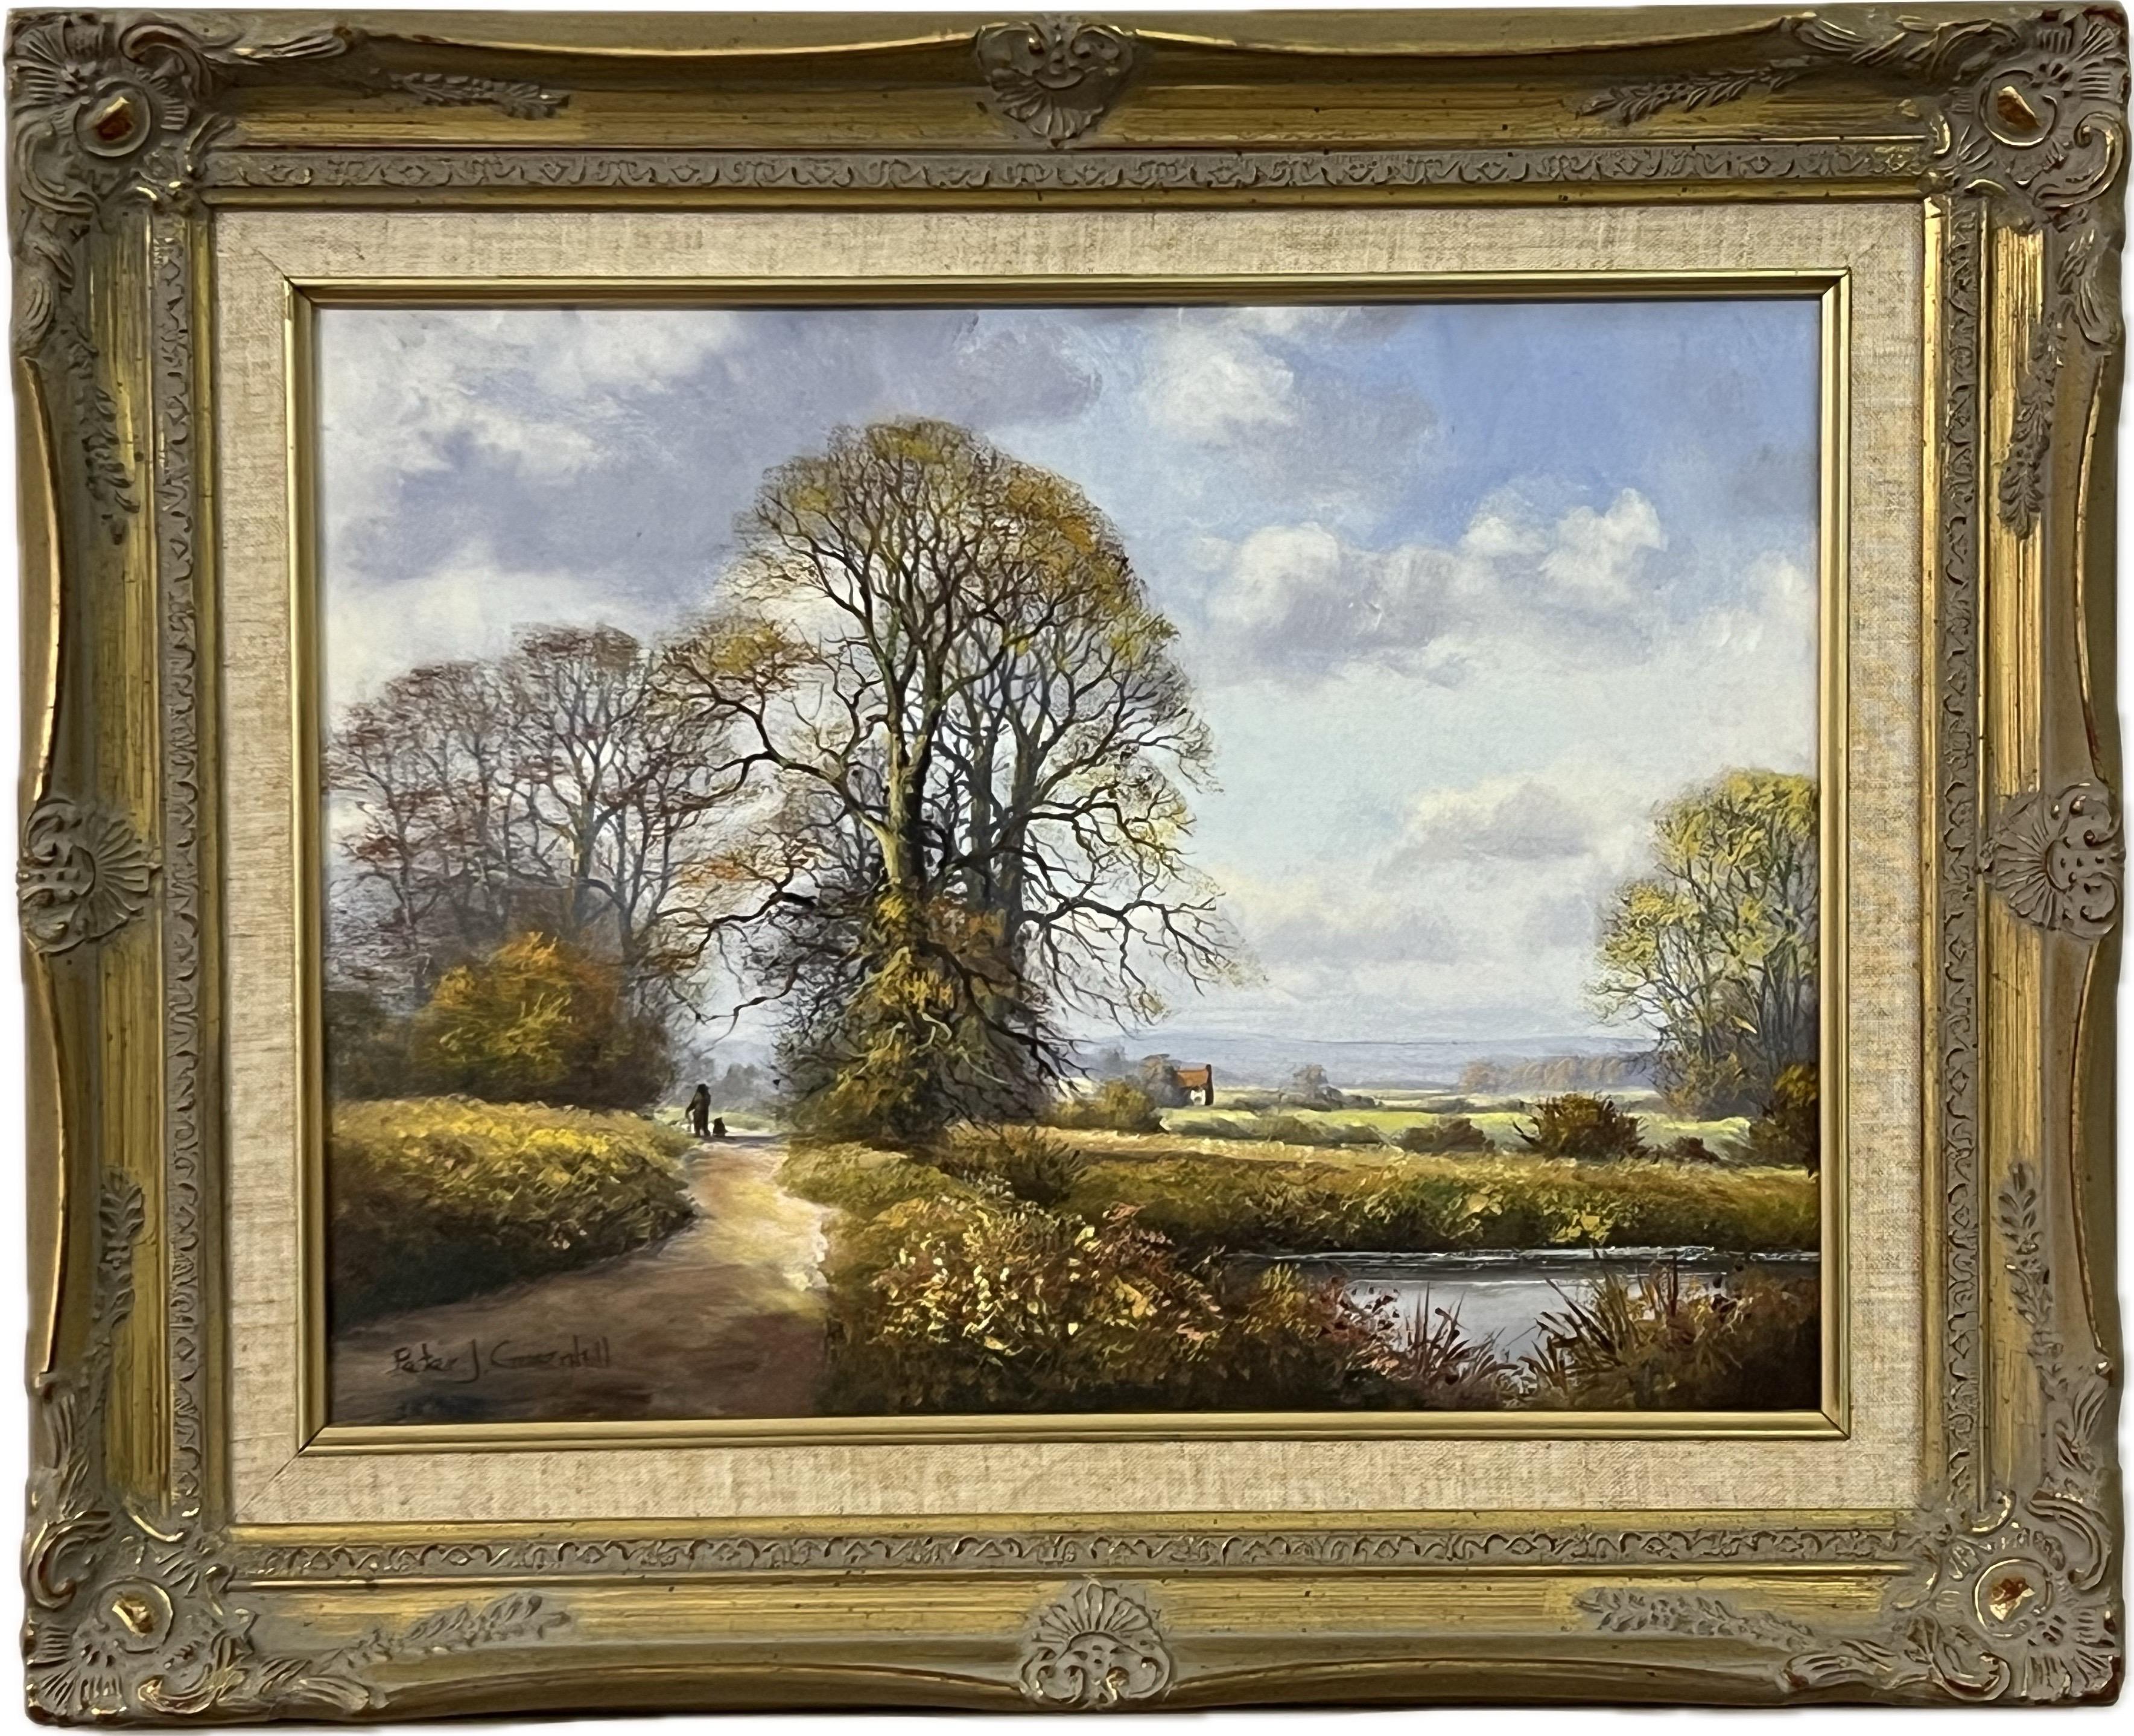 Bauernhaus an einem Fluss in der englischen Landschaft des 20. Jahrhunderts des britischen Künstlers